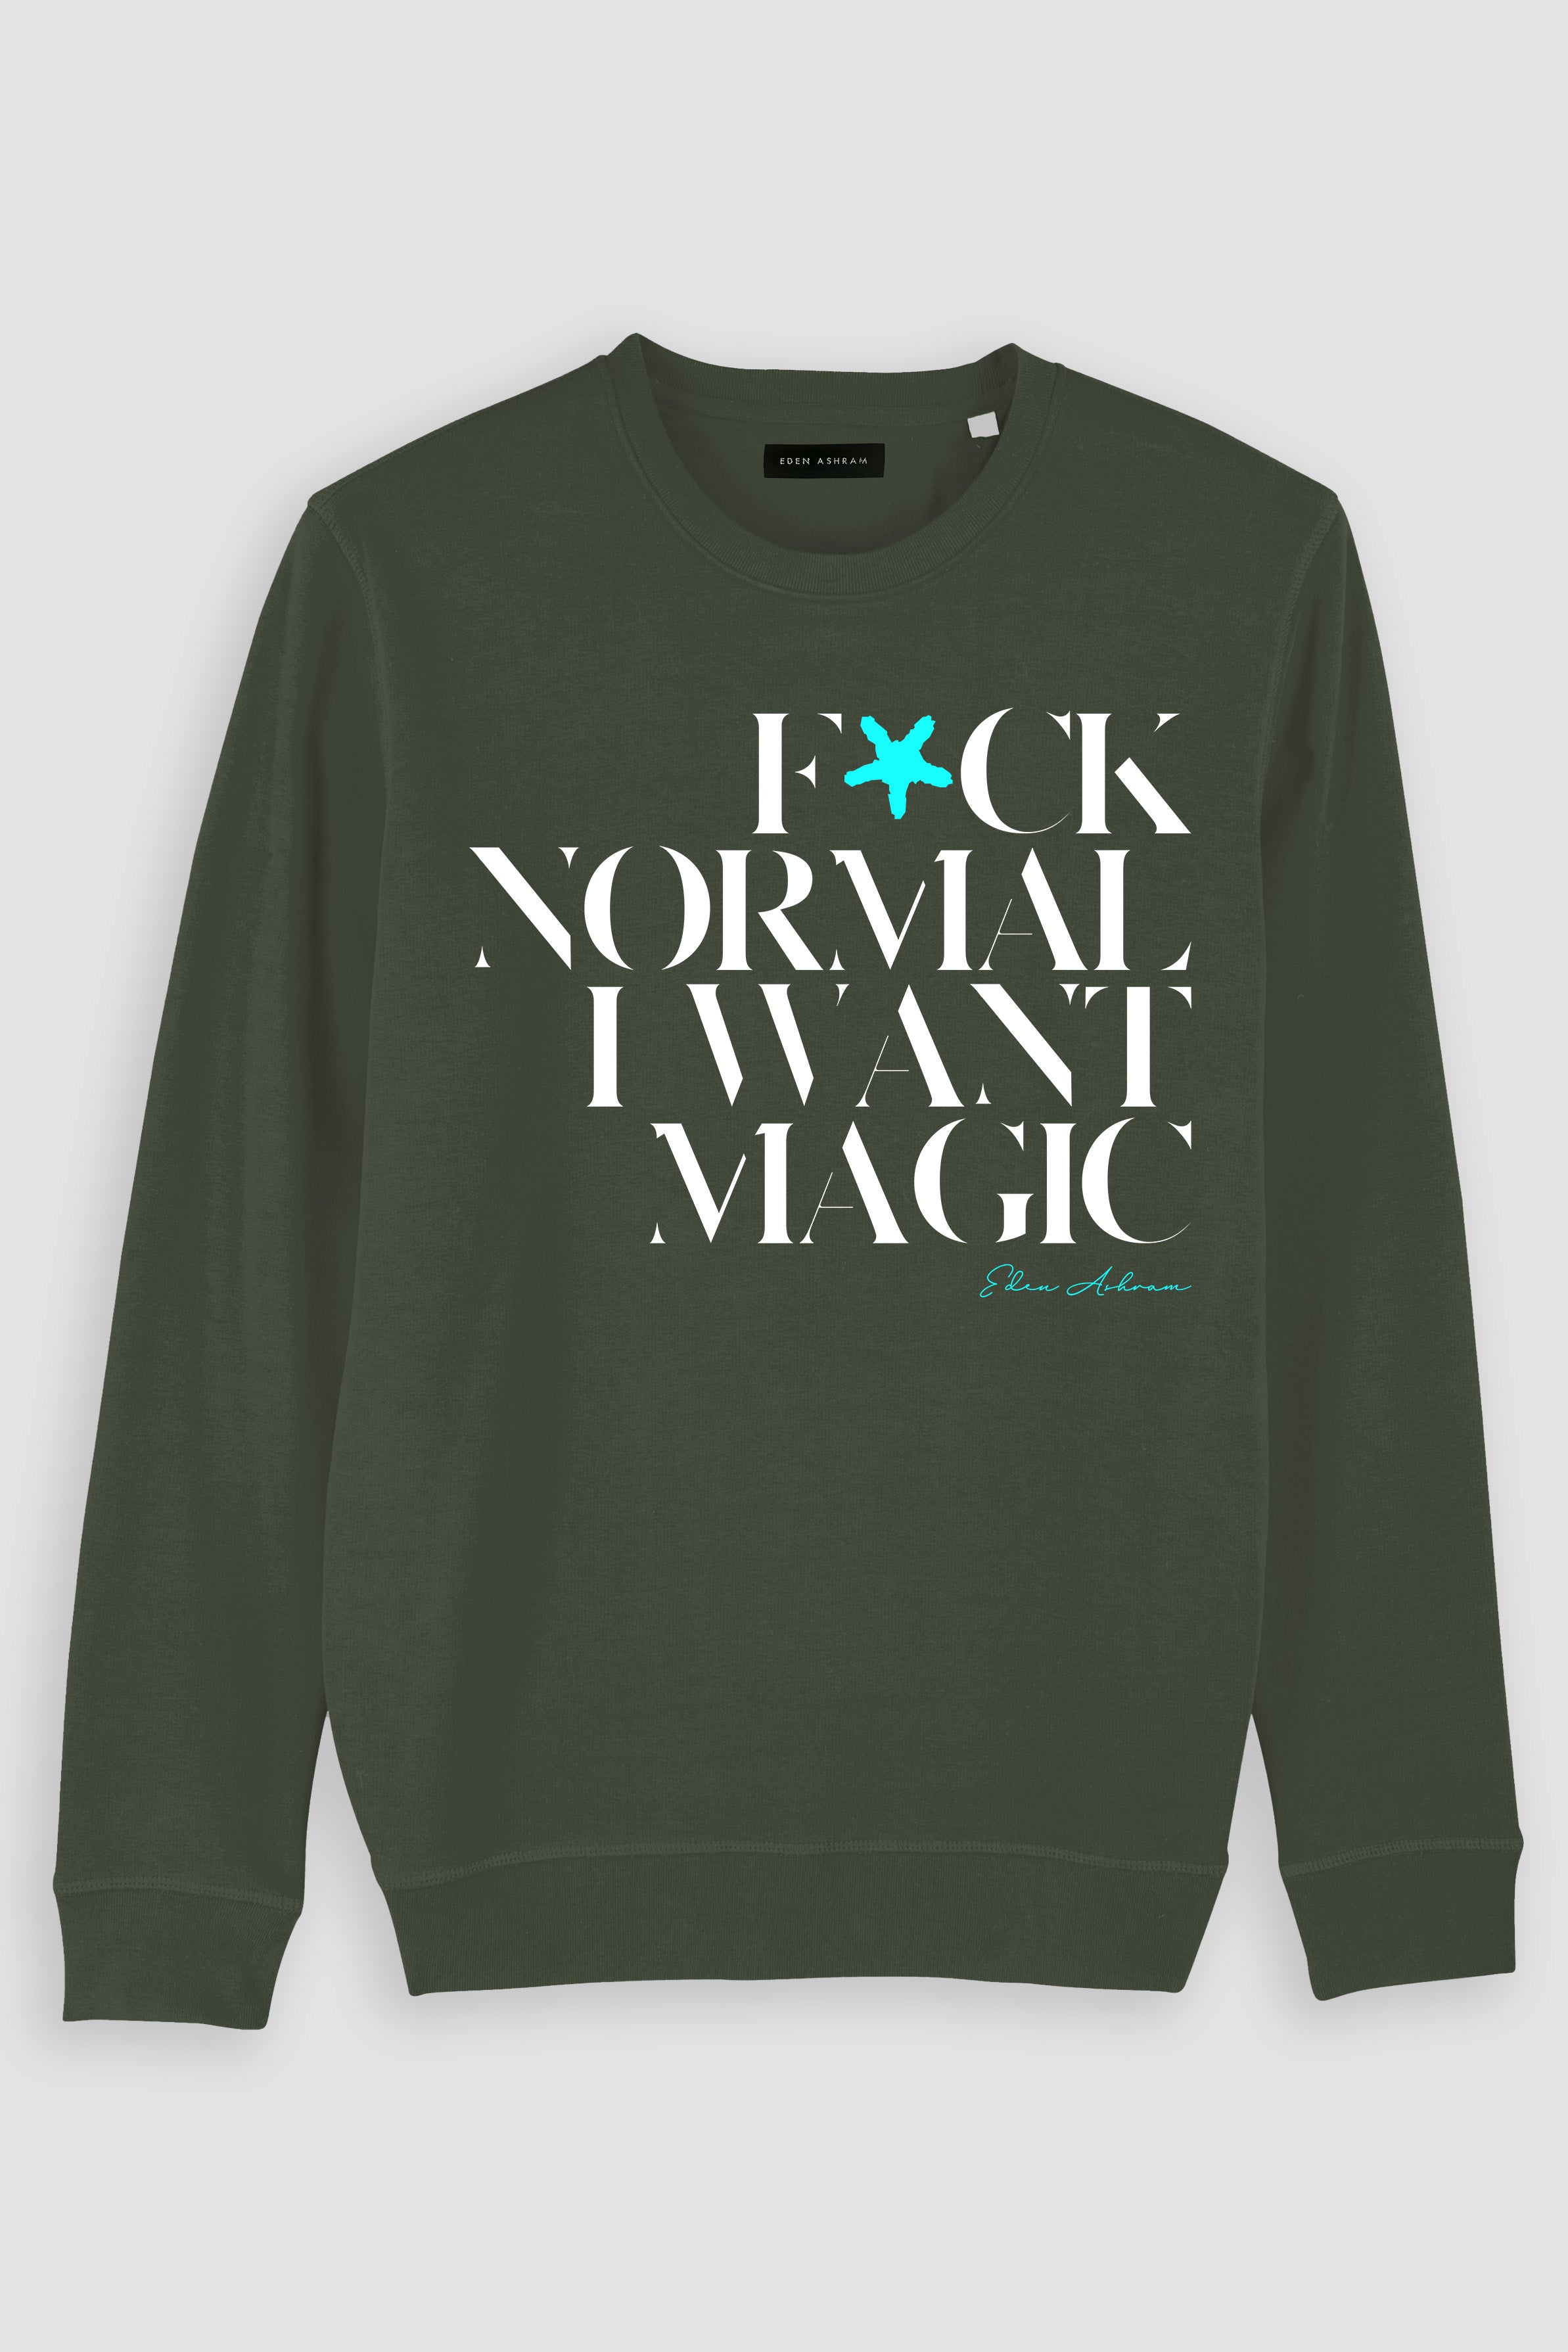 EDEN ASHRAM F*ck Normal I Want Magic Premium Crew Neck Sweatshirt Khaki